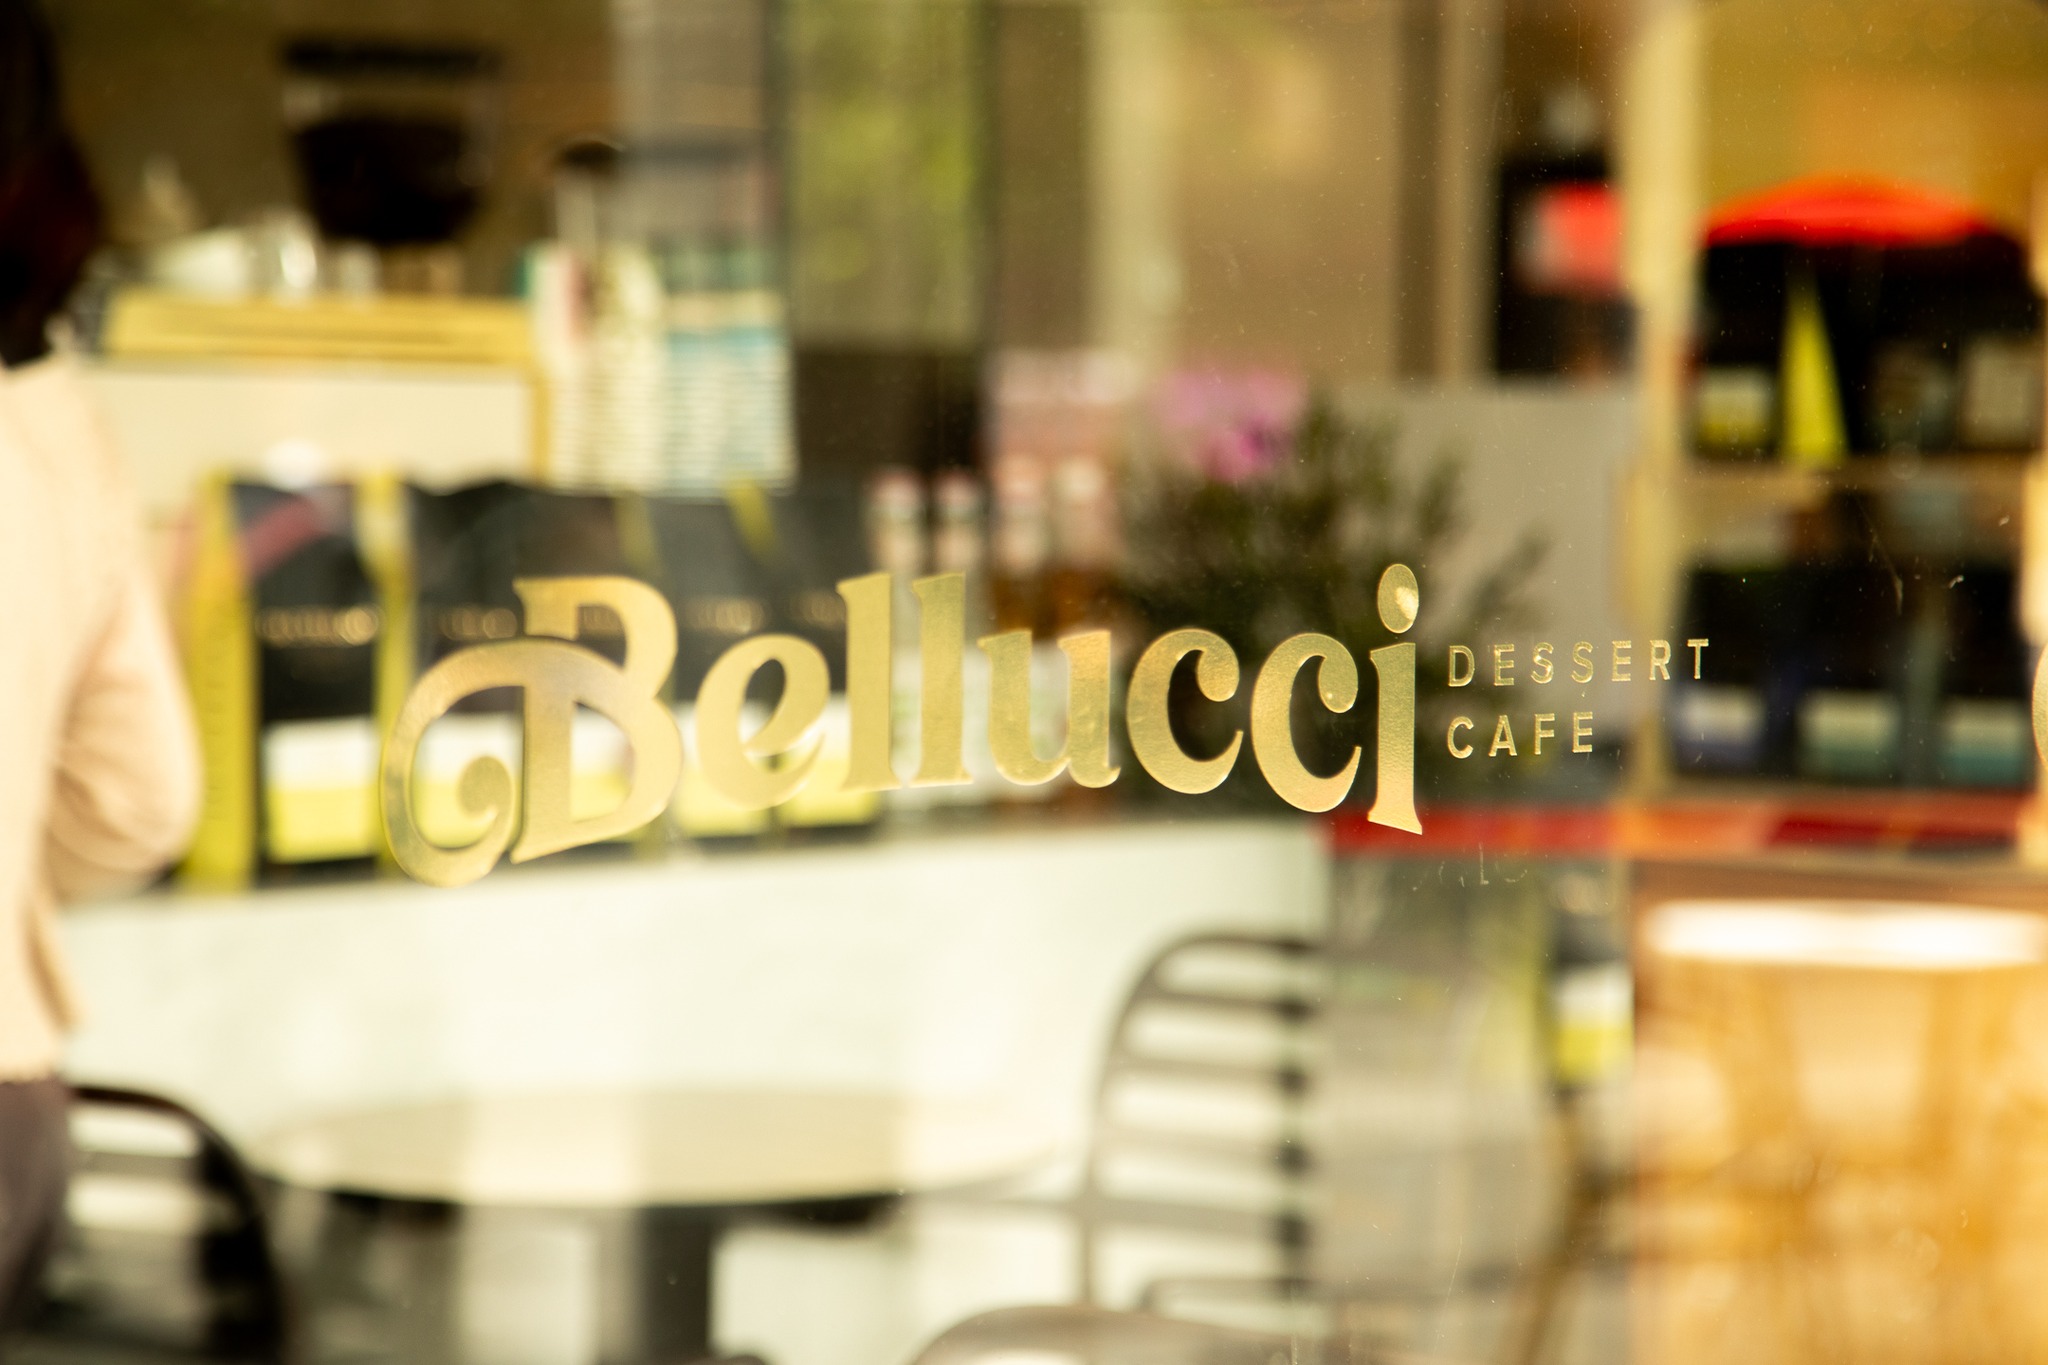 Bellucci Dessert Cafe